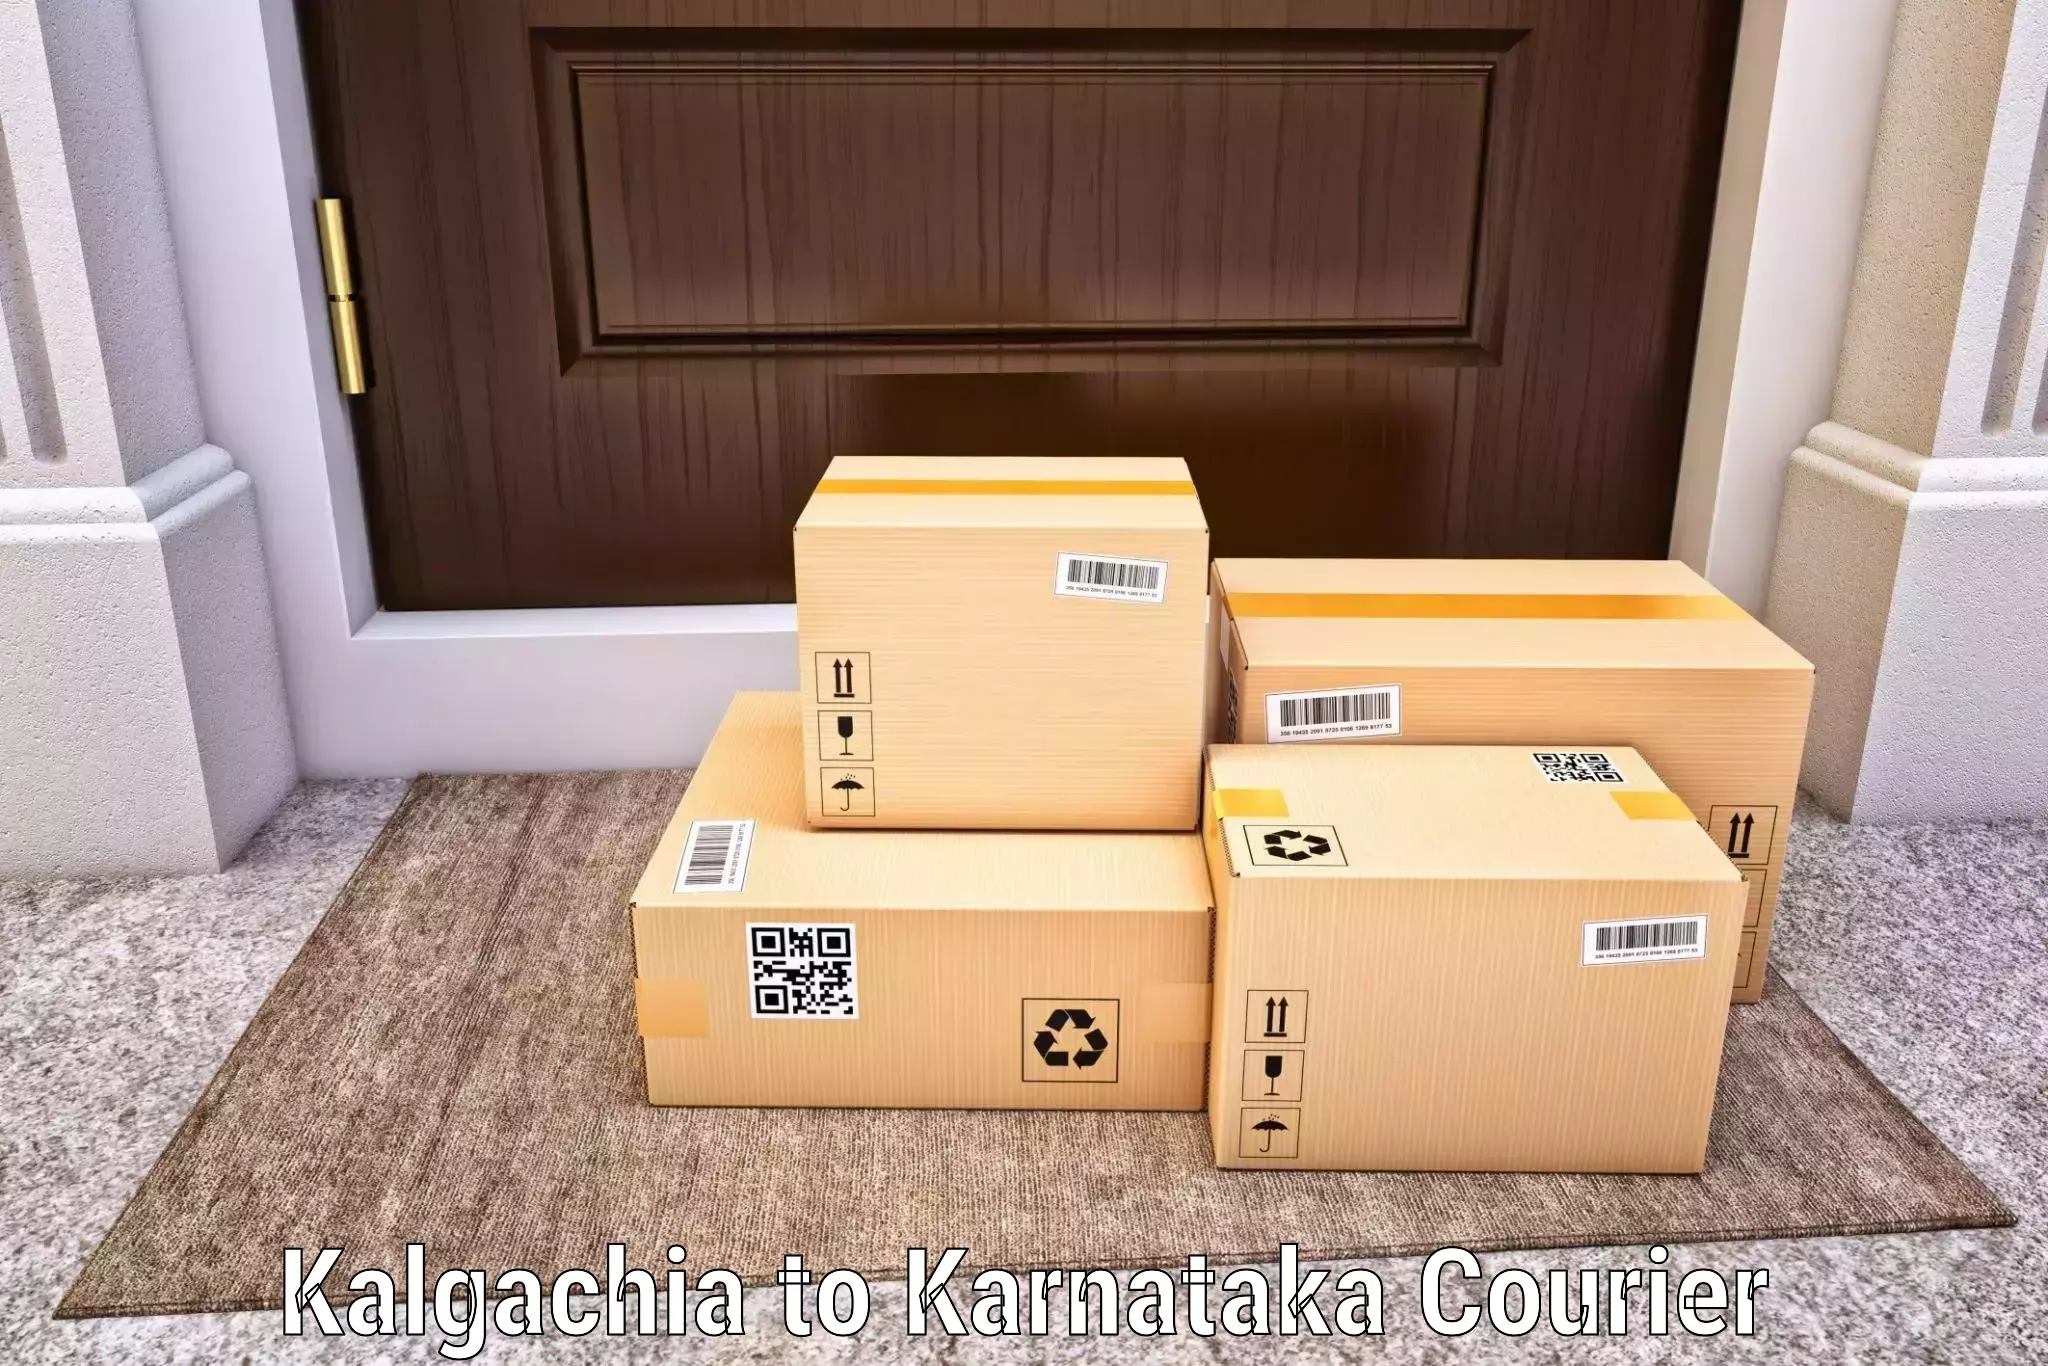 Reliable shipping partners in Kalgachia to Kulshekar